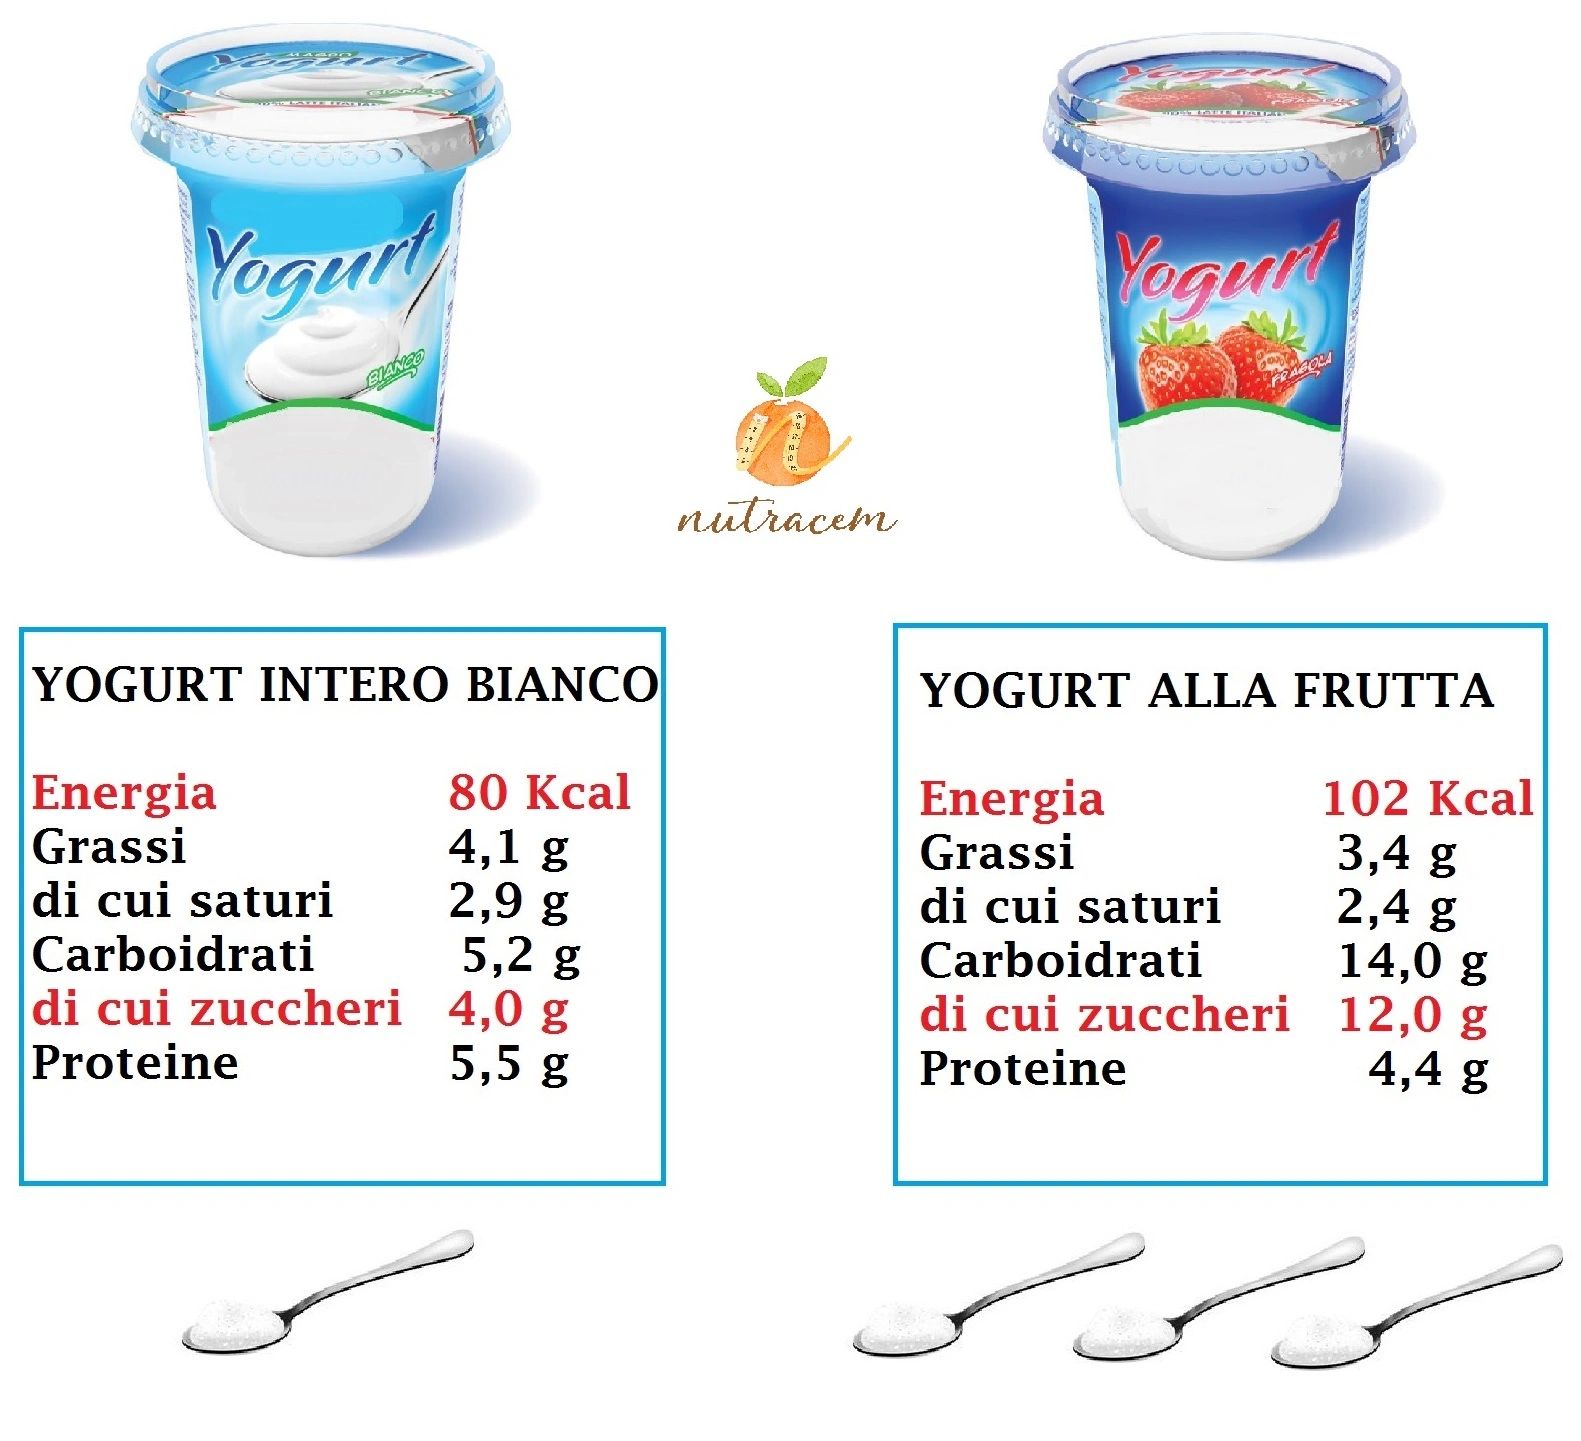 Nello yogurt alla frutta non c'è la frutta!